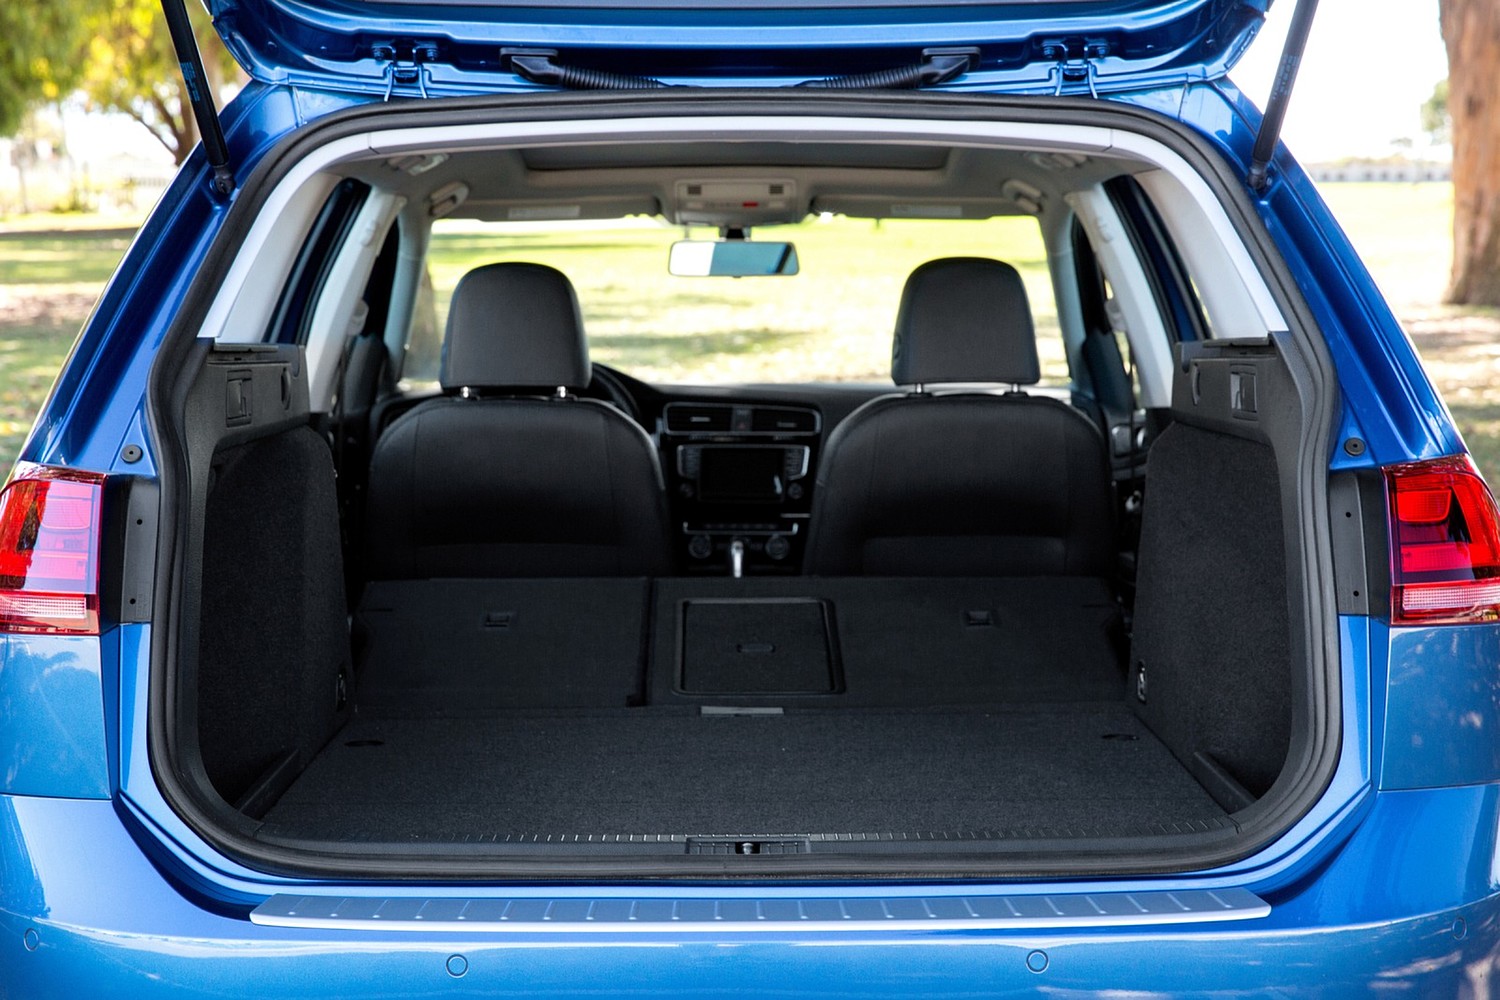 Volkswagen Golf SportWagen TSI SEL Wagon Cargo Area (2015 model year shown)